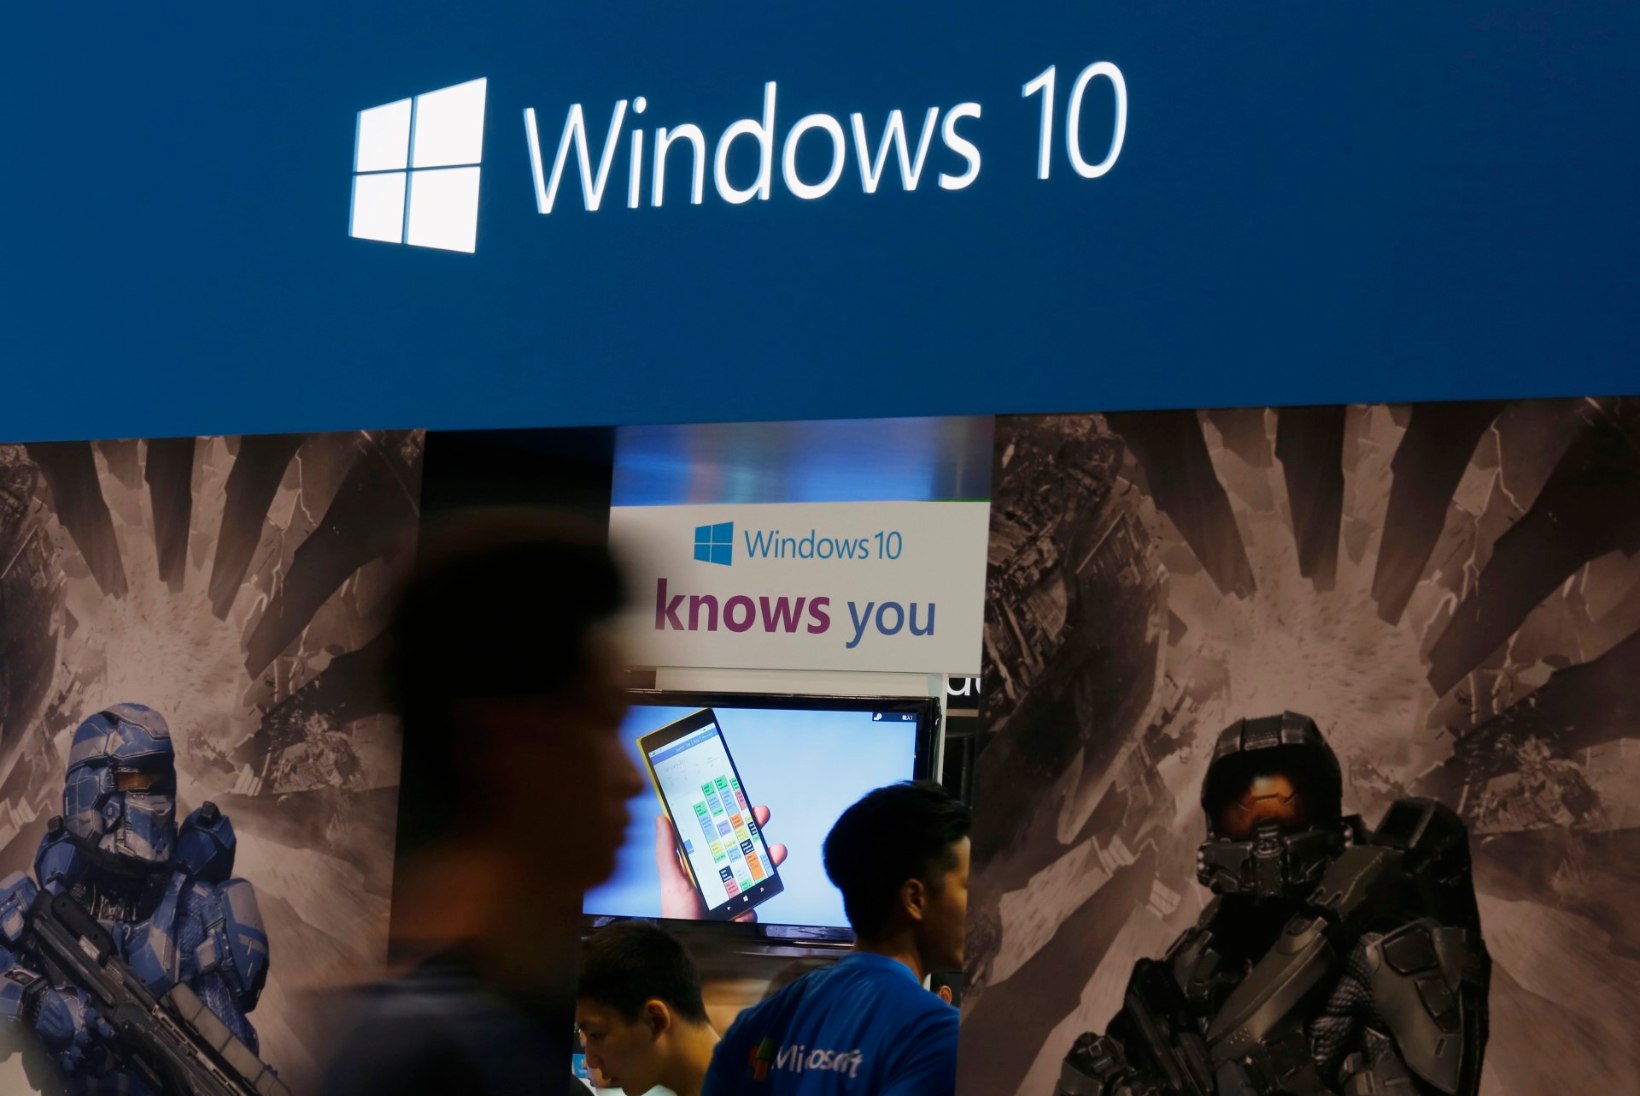 Kas laadisite juba Windows 10 alla?